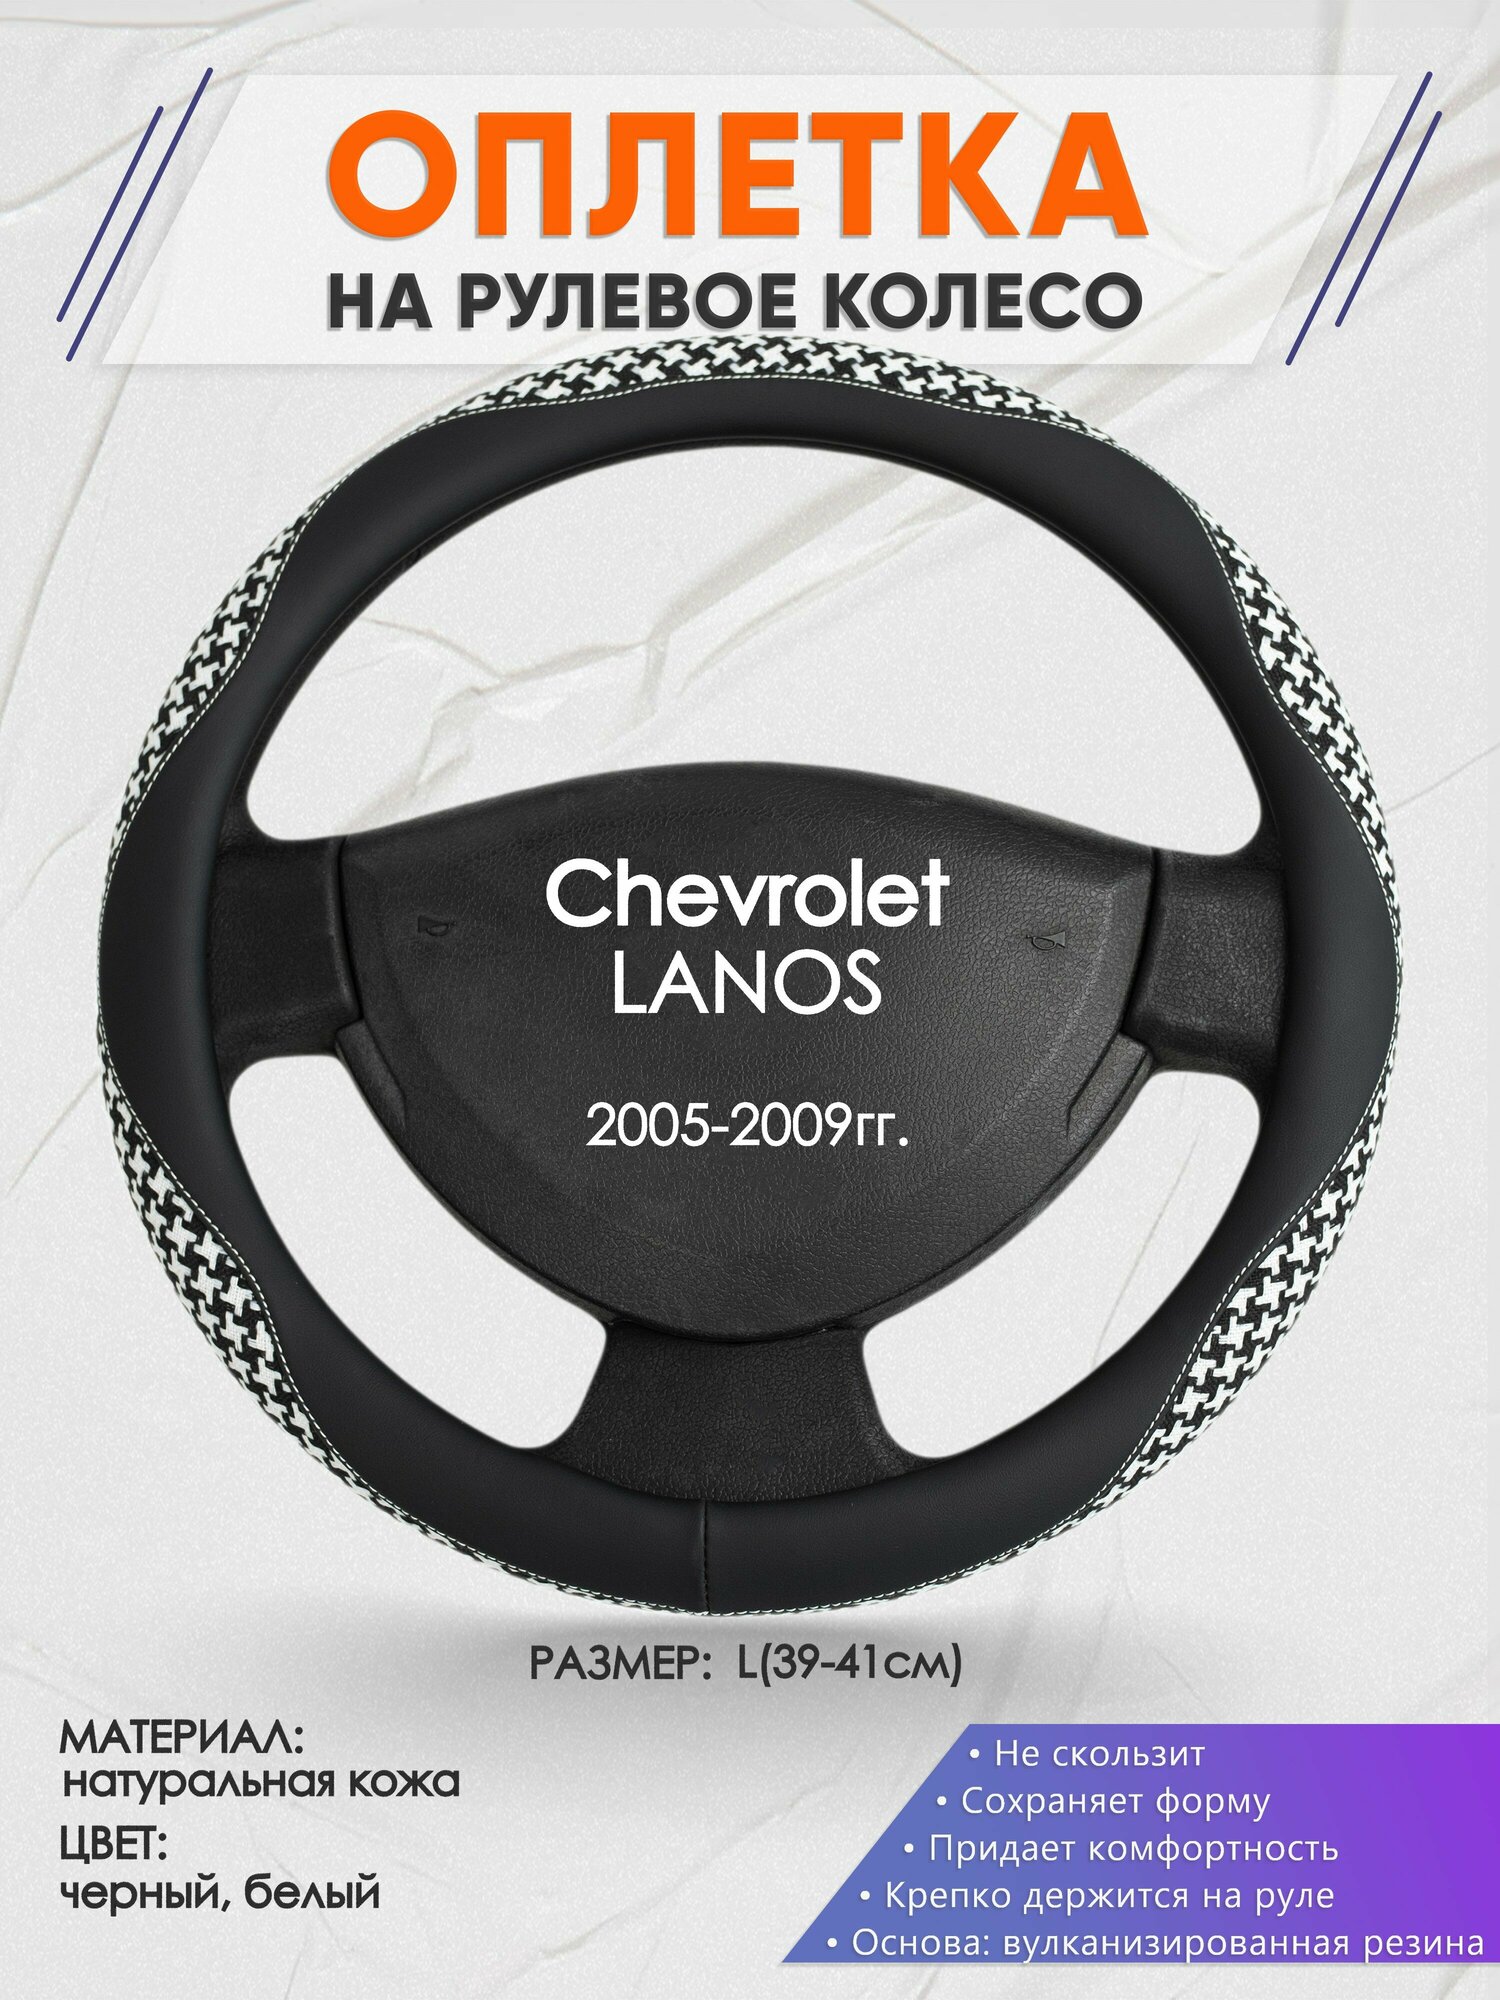 Оплетка на руль для Chevrolet LANOS(Шевроле Ланос) 2005-2009, L(39-41см), Натуральная кожа 21